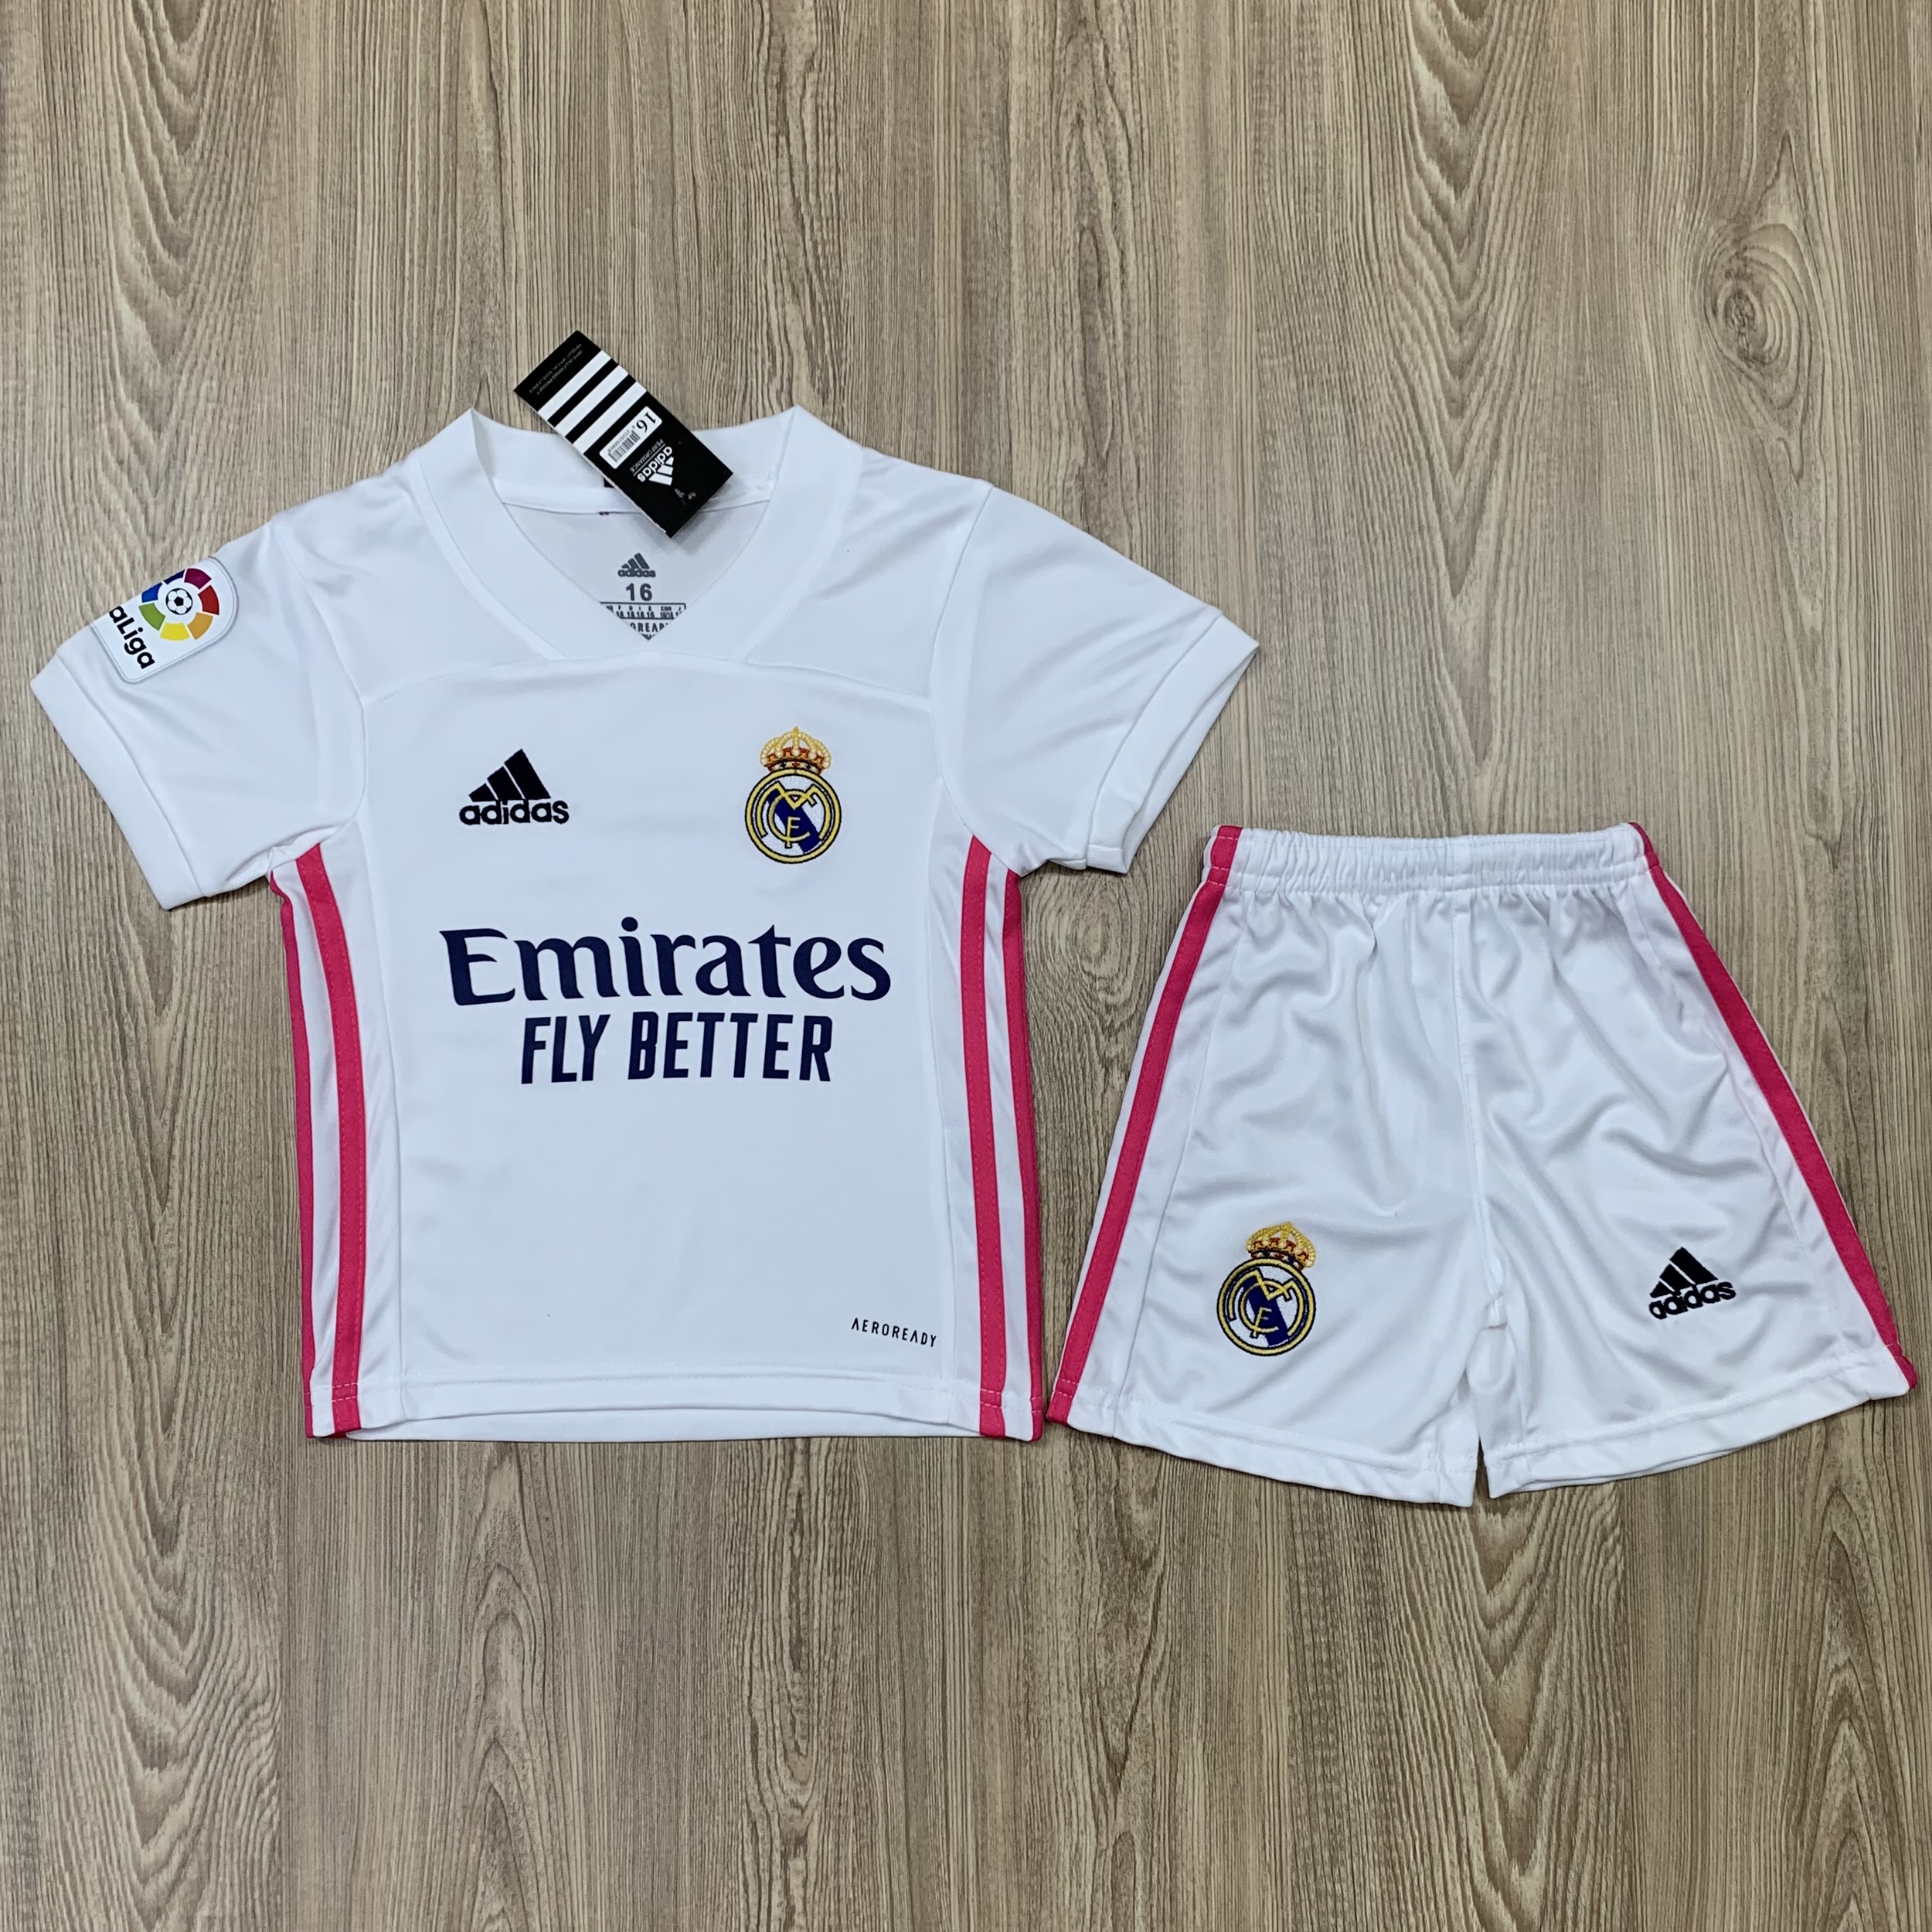 ชุดบอลเด็ก Real Madrid ชุดกีฬาเด็ก ทีมเรอัลมาดริด เสื้อบาซ่า  ซื้อครั้งเดียวได้ทั้งชุด (เสื้อ+กางเกง) ตัวเดียวในราคาส่ง